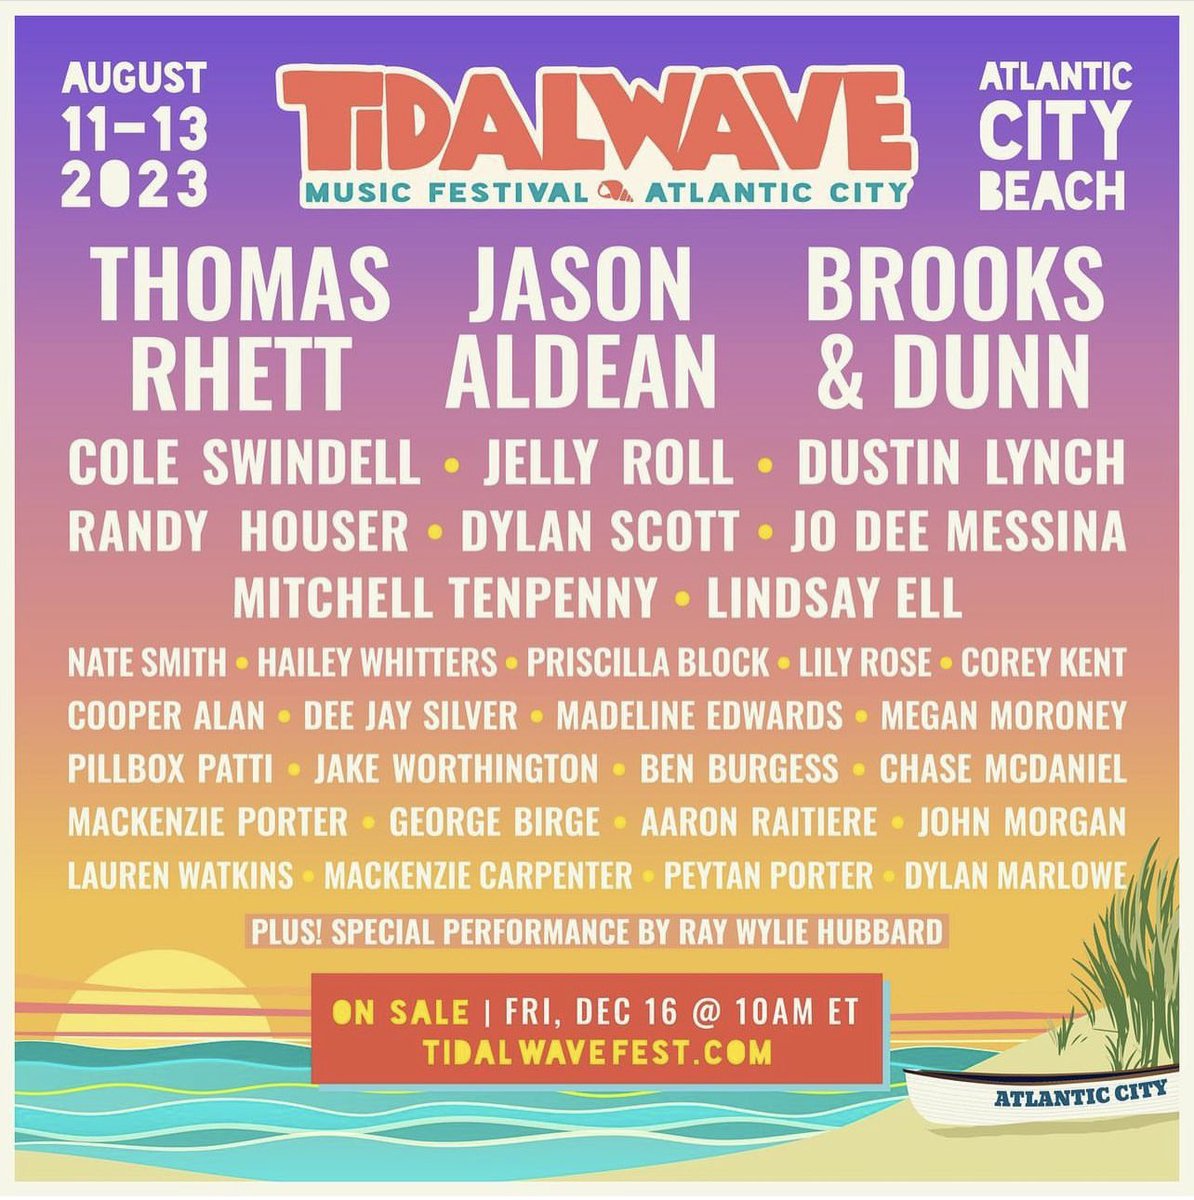 See y’all at @TidalWaveFest. Tickets + info: Tidalwavefest.com